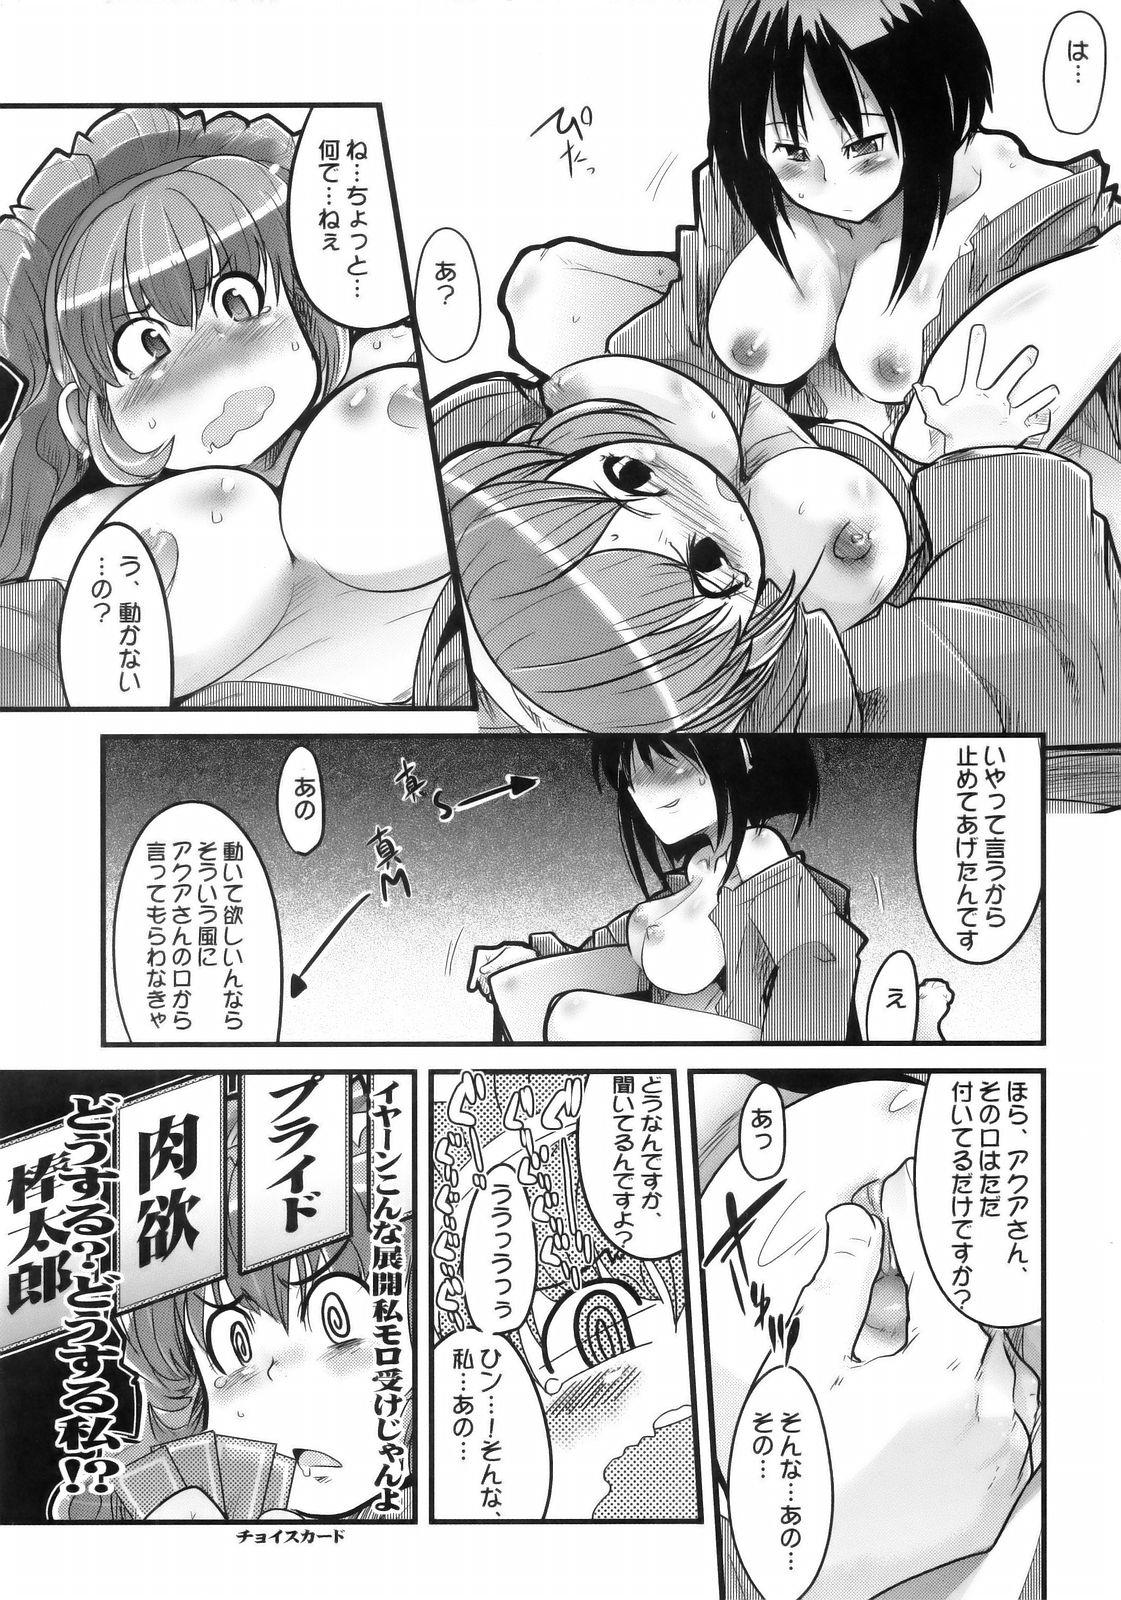 Storyline Boku no Watashi no Super Bobobbo Taisen MGJOX - Super robot wars Penetration - Page 12